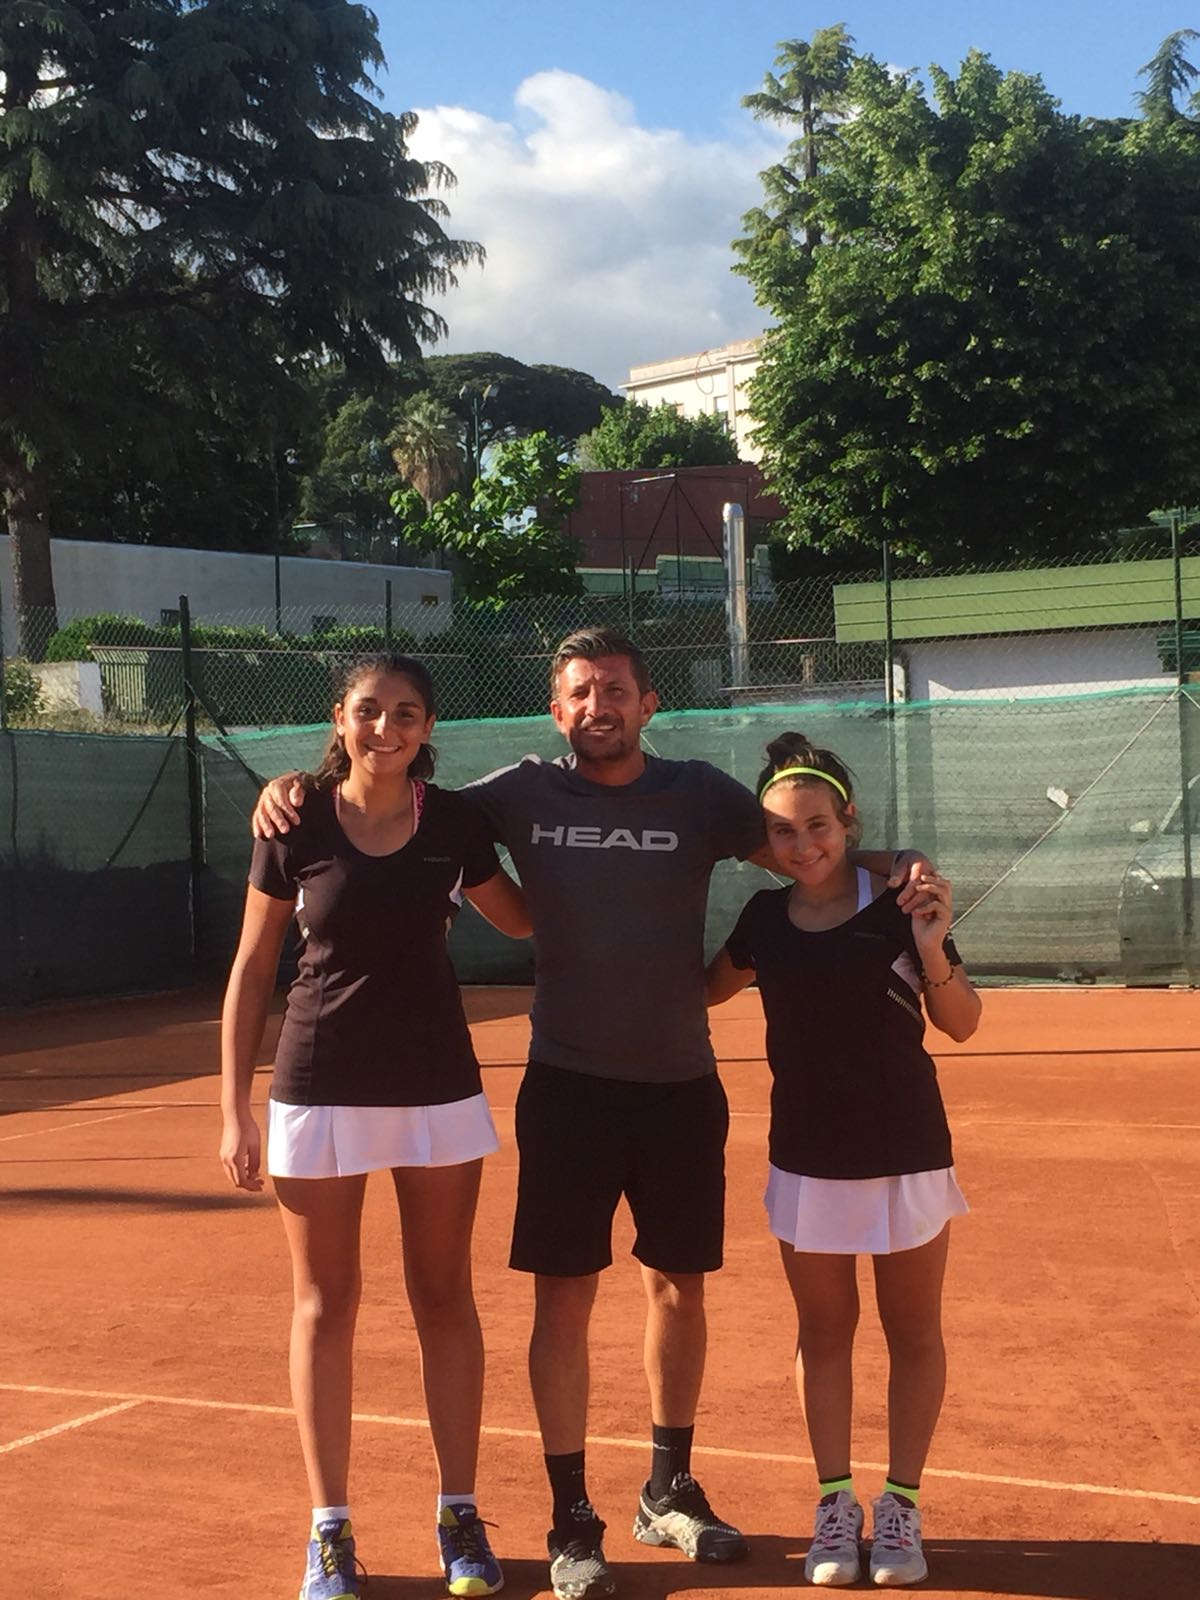 CAMPIONATI CAMPANI. L’Accademia Tennis Napoli vince lo scudetto under 14 femminile. E’ il 30° titolo del 2018